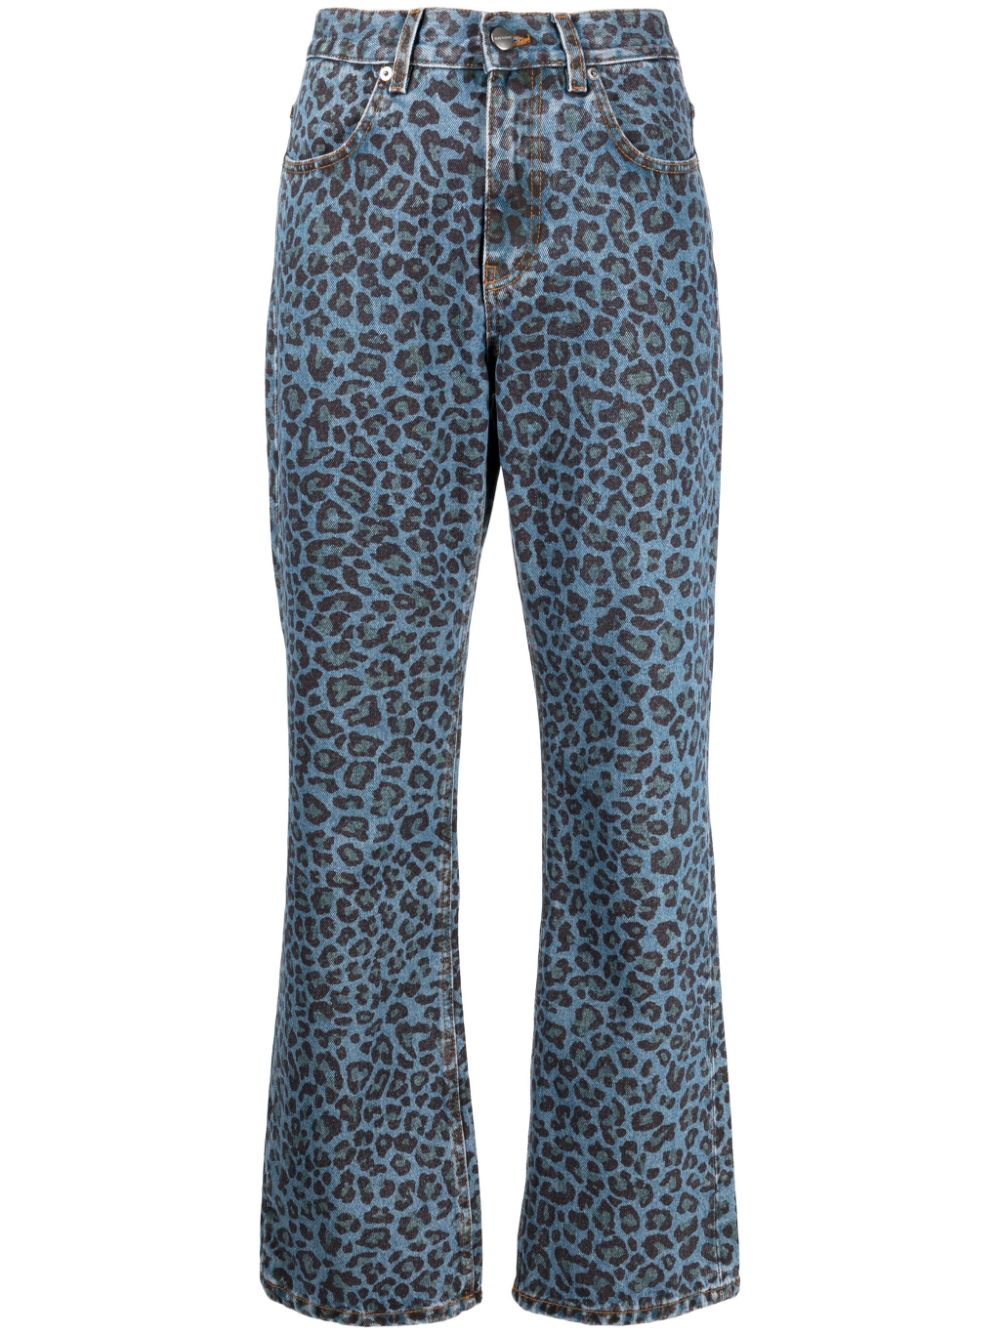 Molly Goddard leopard-print Flared Jeans - Farfetch